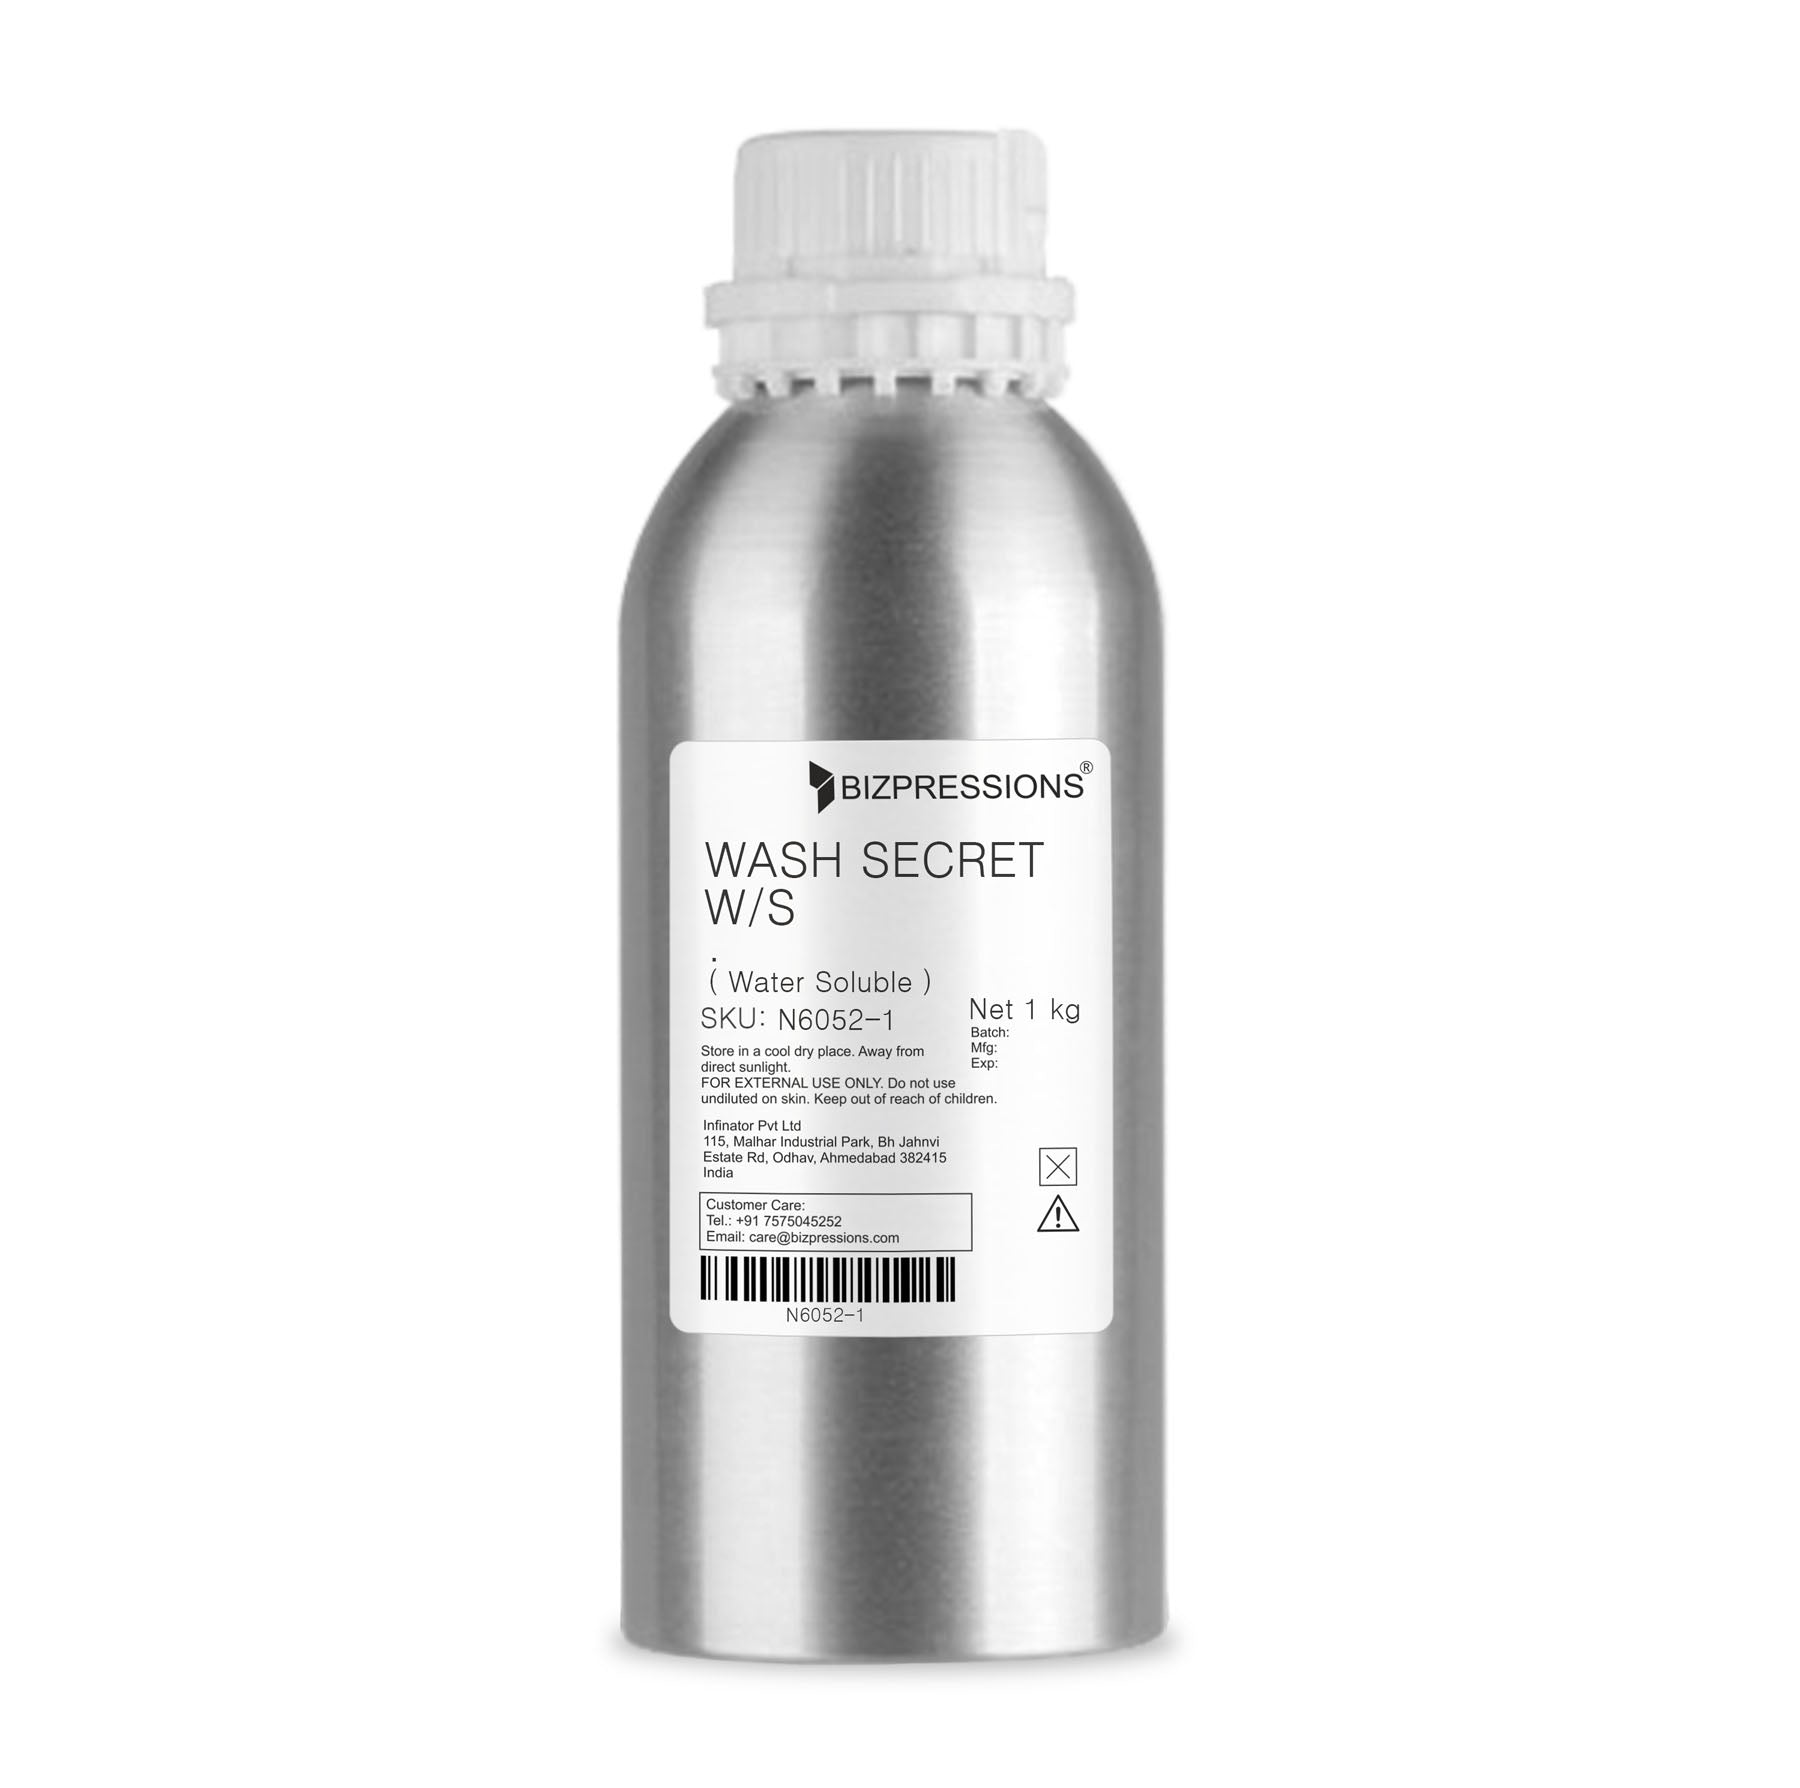 WASH SECRET W/S - Fragrance ( Water Soluble ) - 1 kg